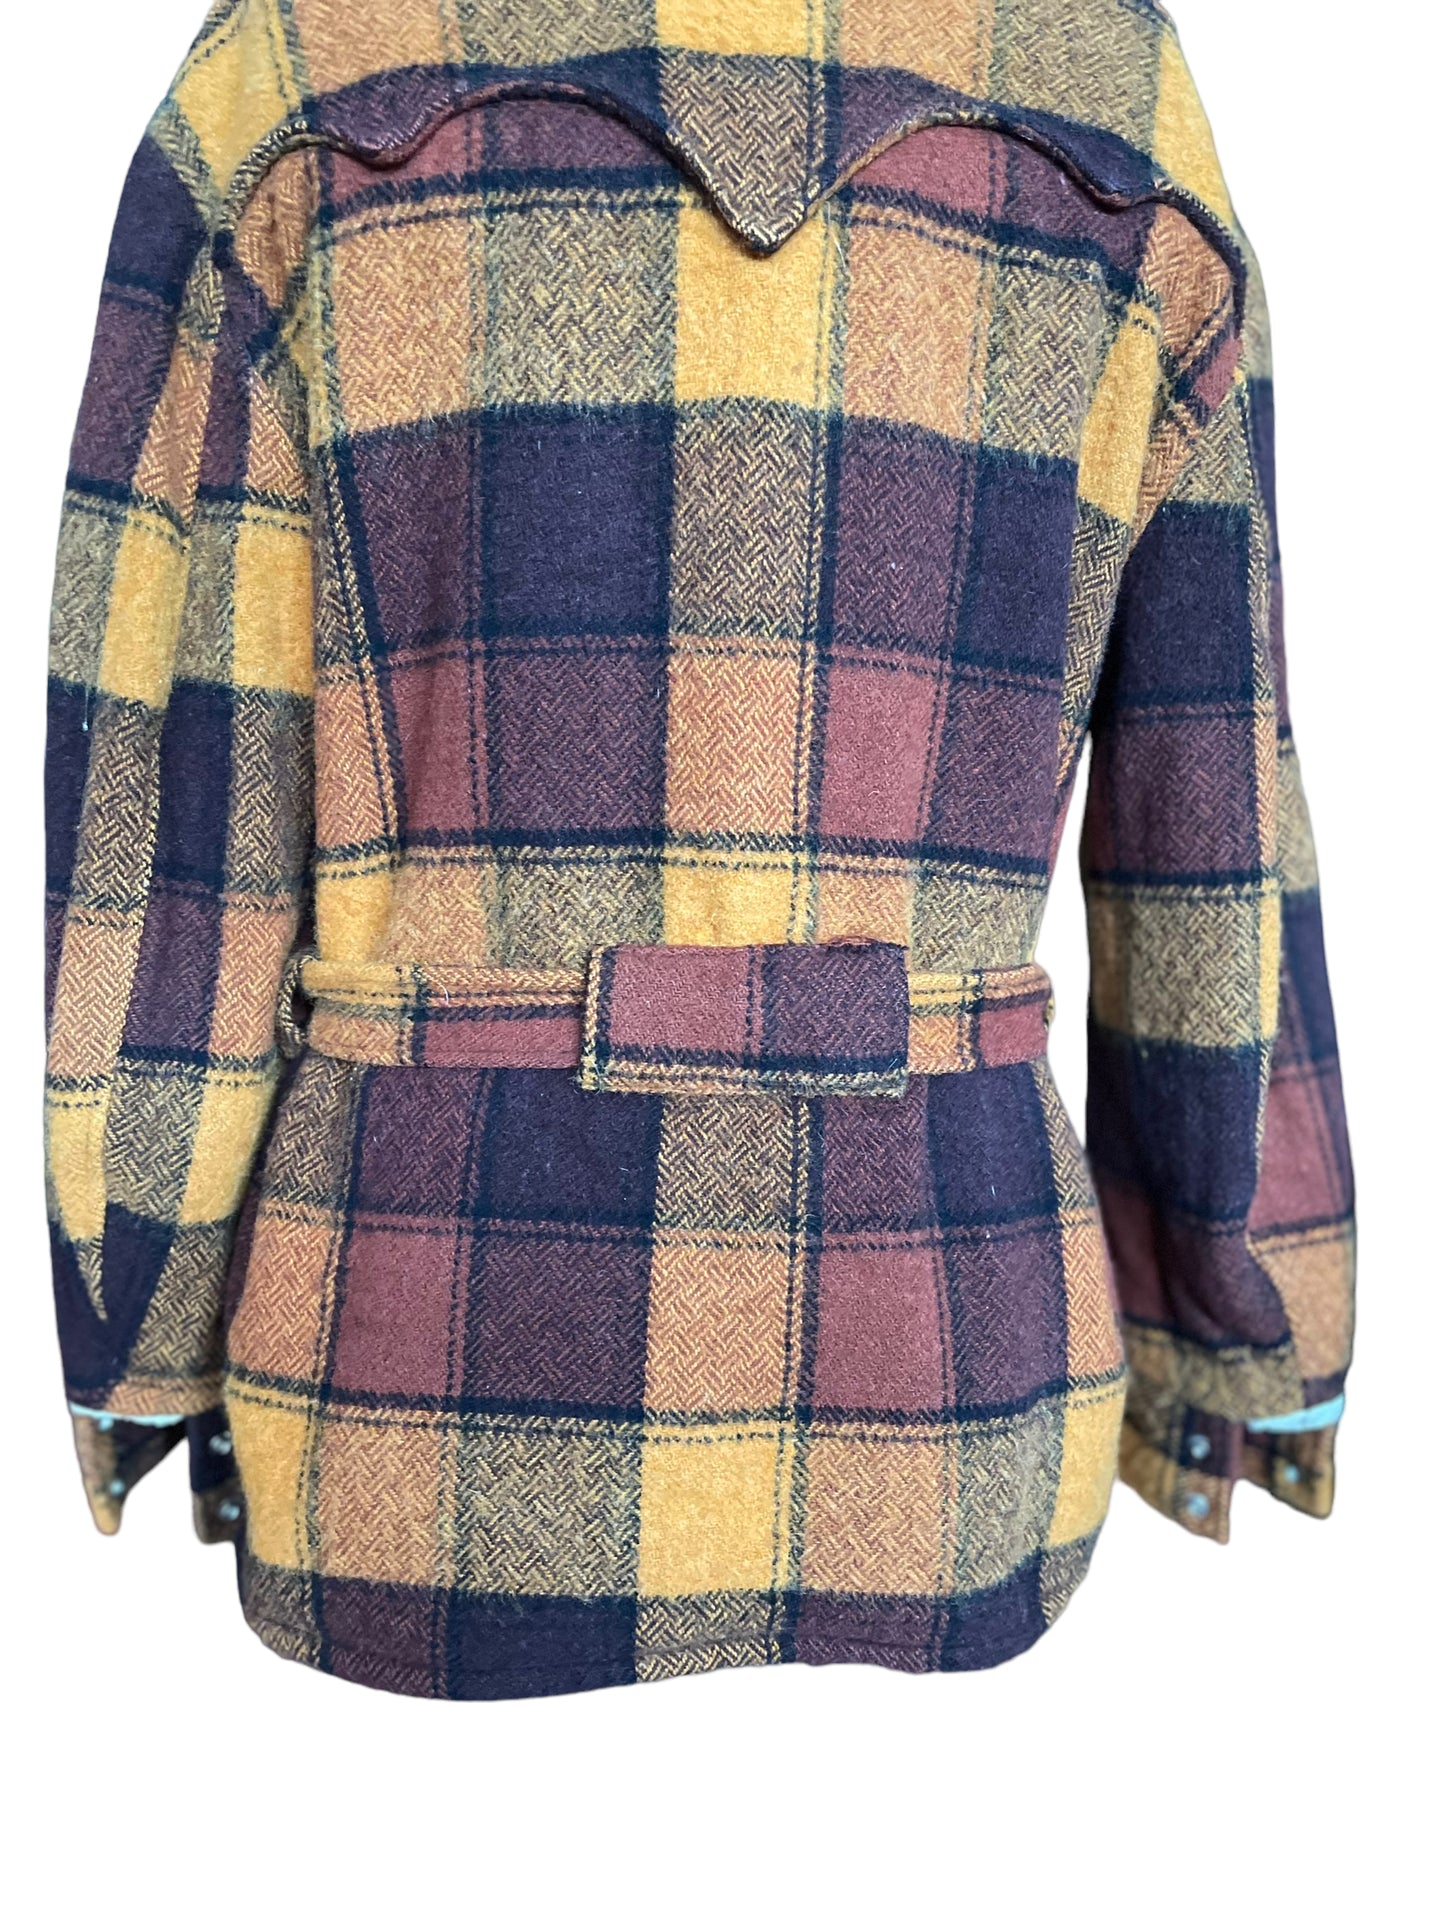 Back view of Vintage H Bar C Western Wear Plaid Belted Coat | Seattle True Vintage | Barn Owl Vintage Coats